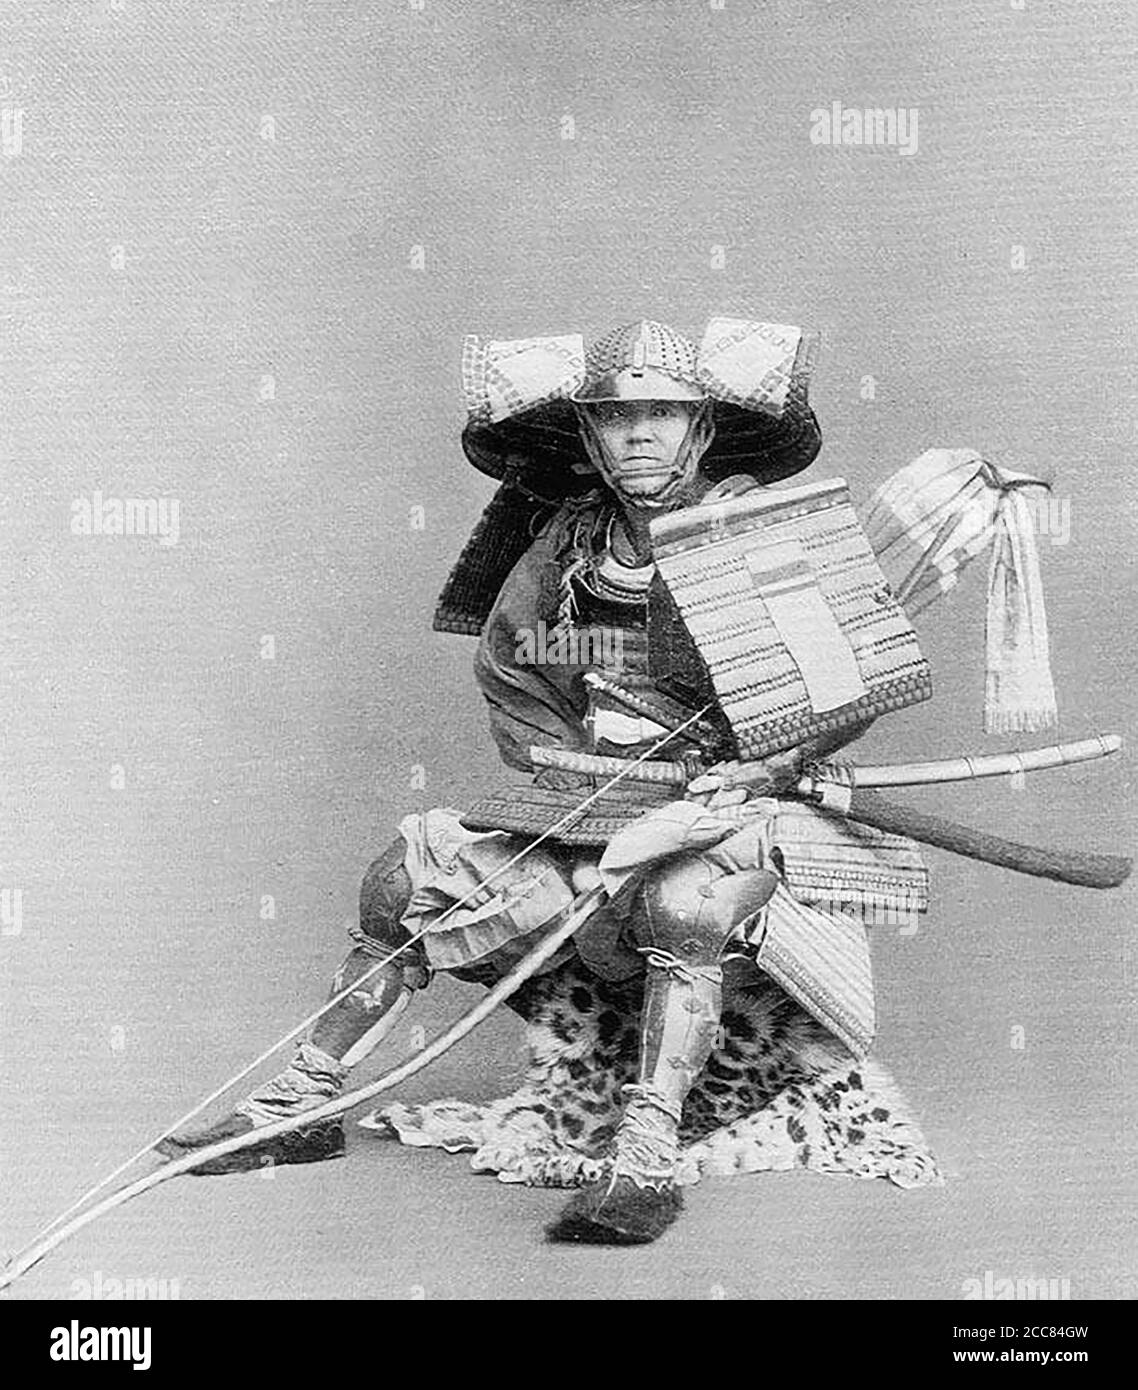 Japan: 'Ein Krieger der Nanhoku-Cho-Periode'. Chemigraph aus der Serie 'Military Costumes in Old Japan' von Kazumasa Ogawa (1860-1929), 1893, Tokio. Ogawa Kazumasa, auch bekannt als Ogawa Kazuma oder Ogawa Isshin, war ein japanischer Fotograf, Chemigraph, Drucker und Verleger der Meiji-Ära. Er war ein Pionier im photomechanischen Druck und der Fotografie und wurde in den Samurai-Clan von Matsudaira geboren, wo er im Alter von 15 Jahren Englisch und Fotografie studierte. Stockfoto